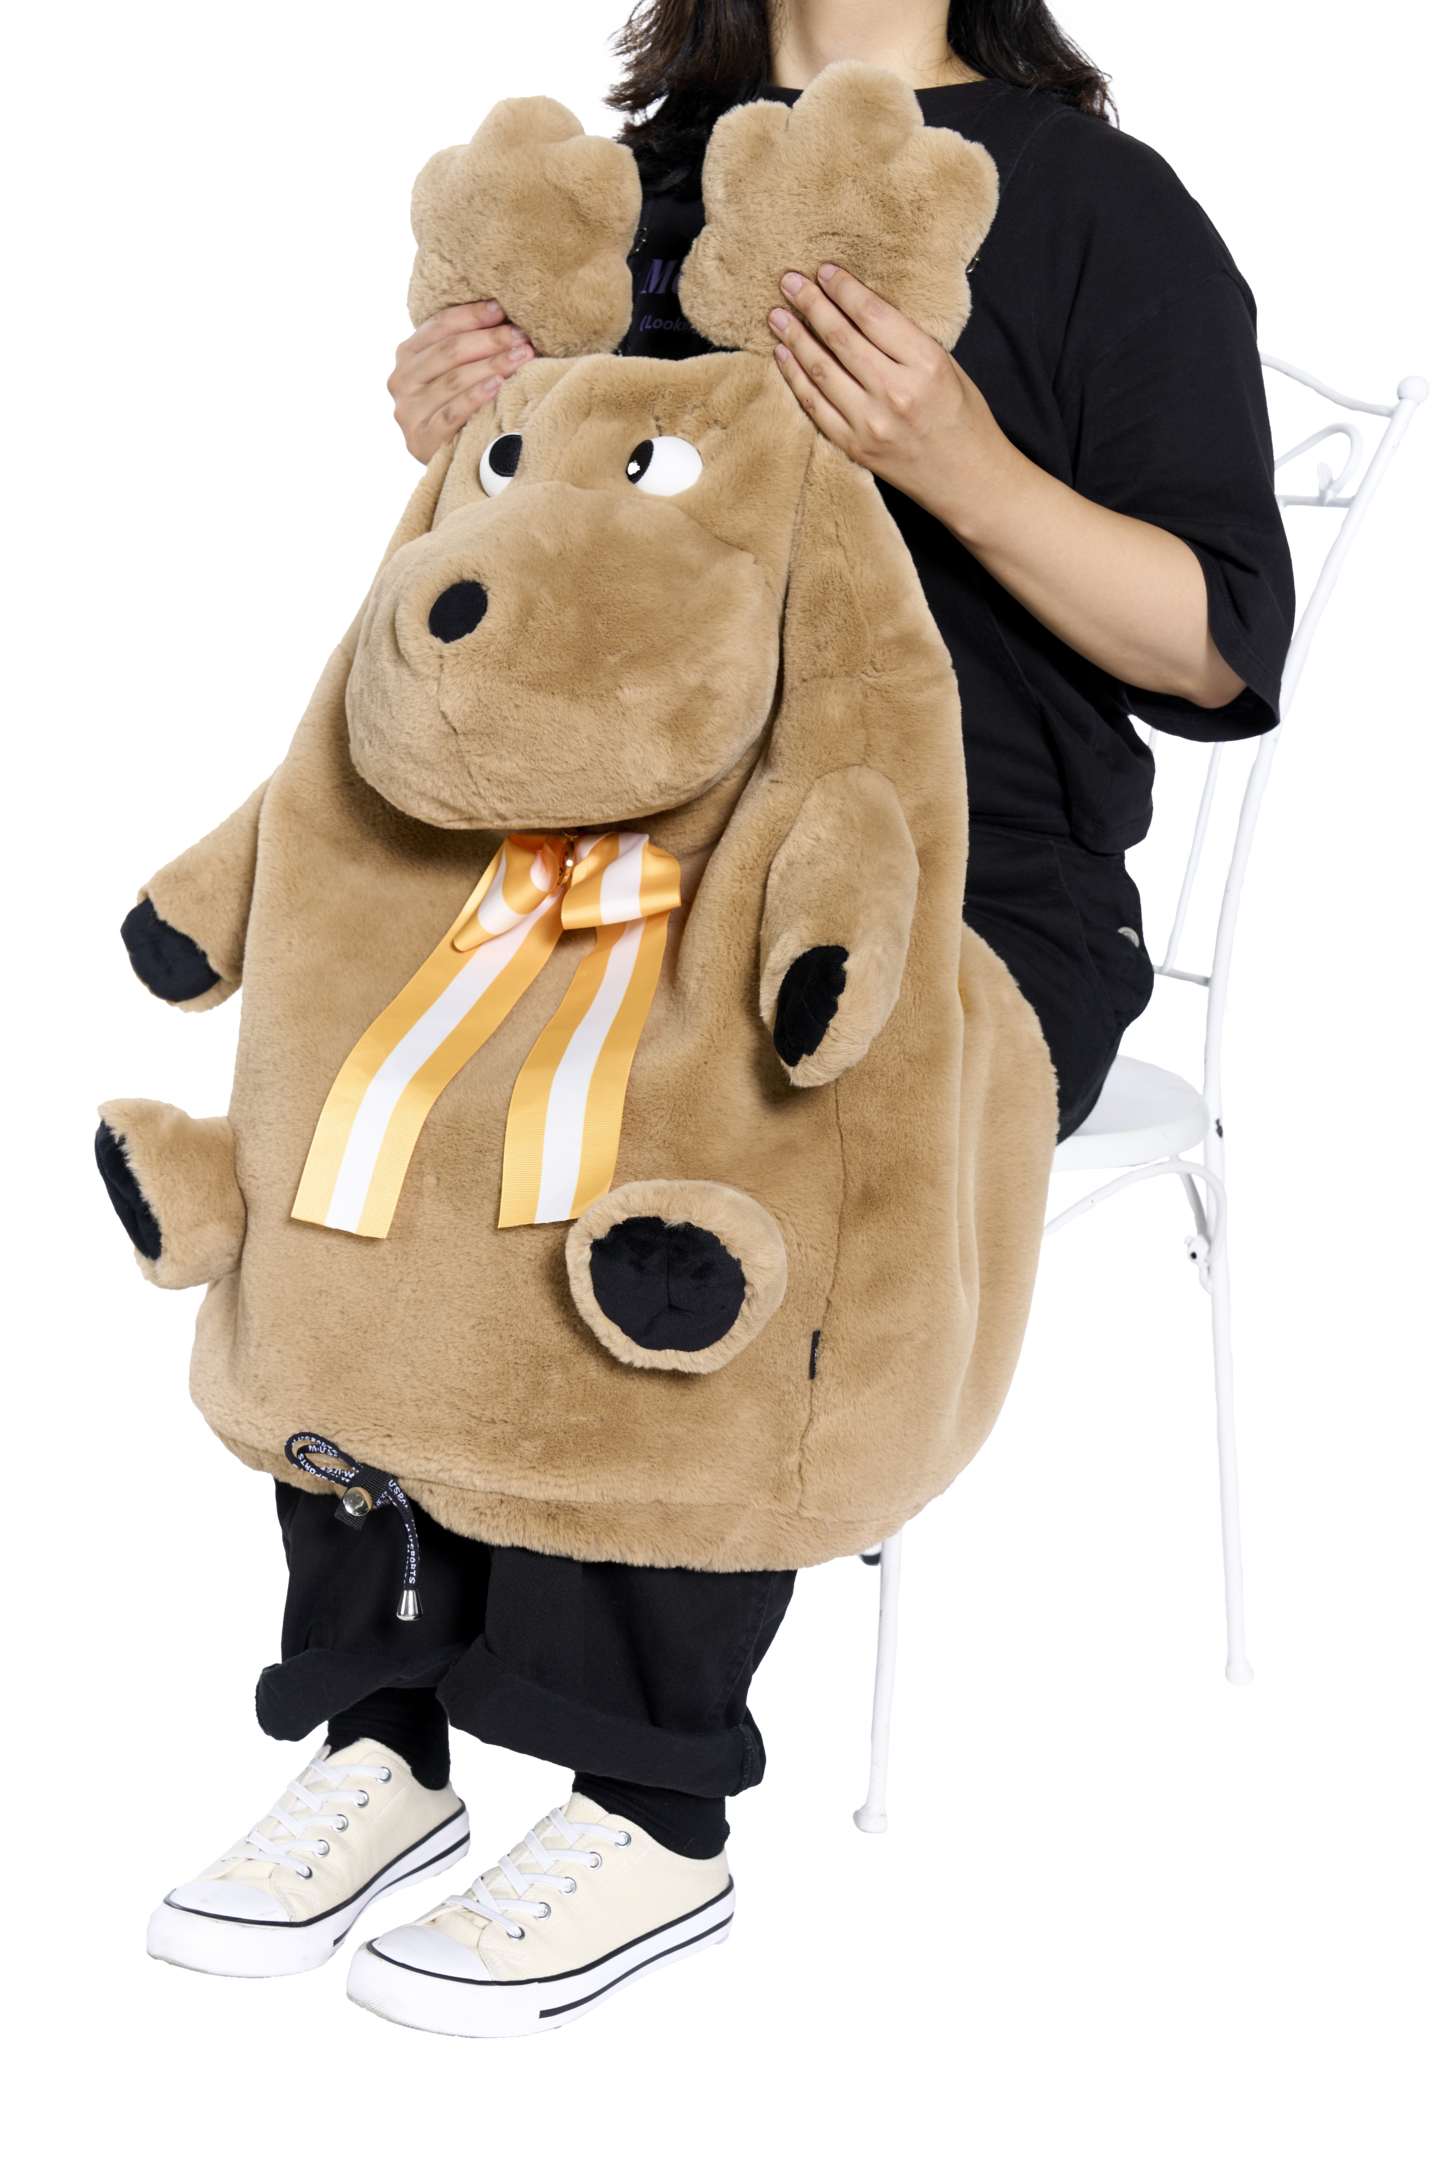 ShuShu stuffed animal type hood cover (703H6950)